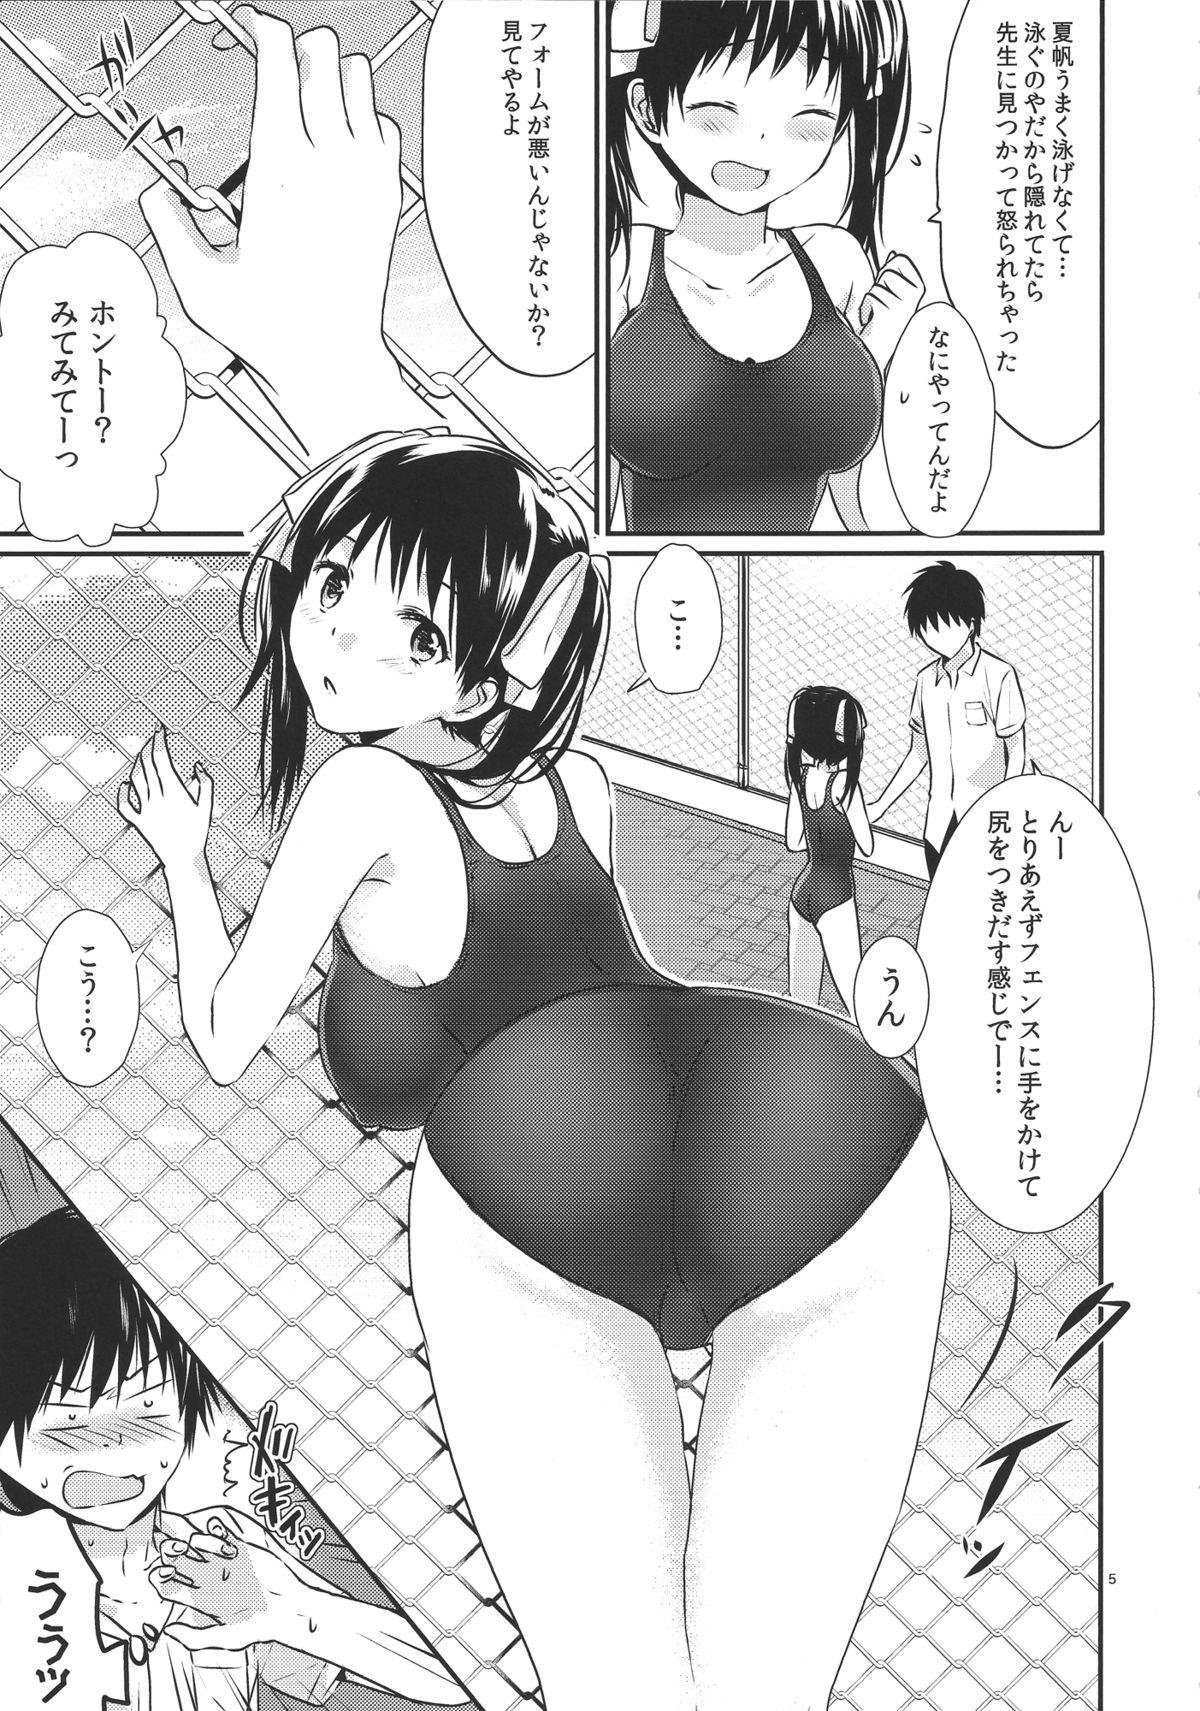 Blackmail Oniichan no koto daisuki dakara sukumizu de nousatsu shite mo iiyo nee Price - Page 4